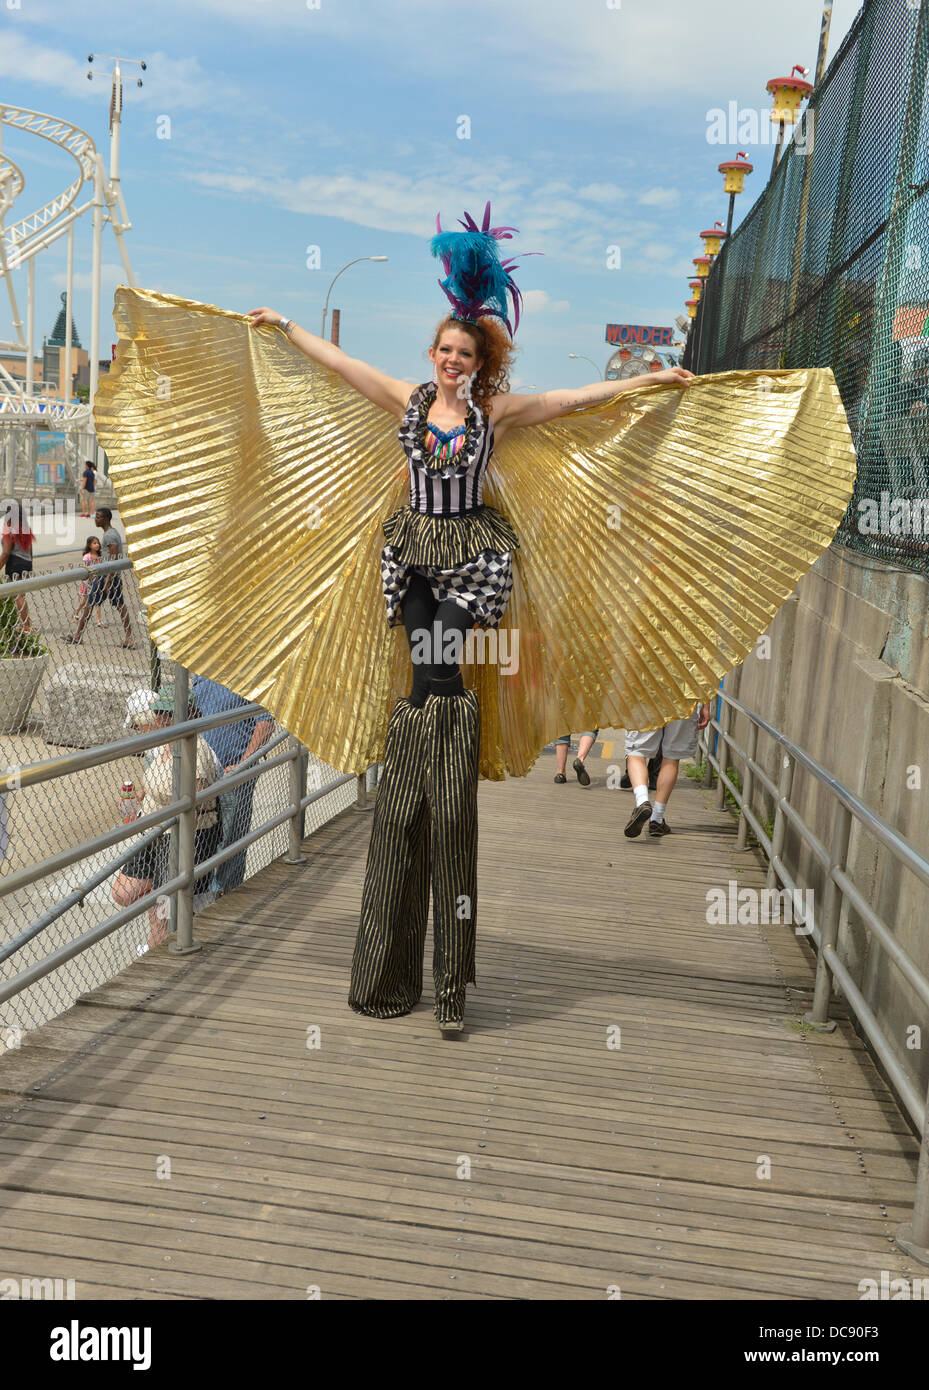 Brooklyn, New York, USA. 10 août 2013. À Coney Island, des Échasses KAE BURKE, Dame de cirque, porte une robe de soirée et costume cape d'or, haute comme elle marche sur pilotis sur la célèbre promenade. Banque D'Images